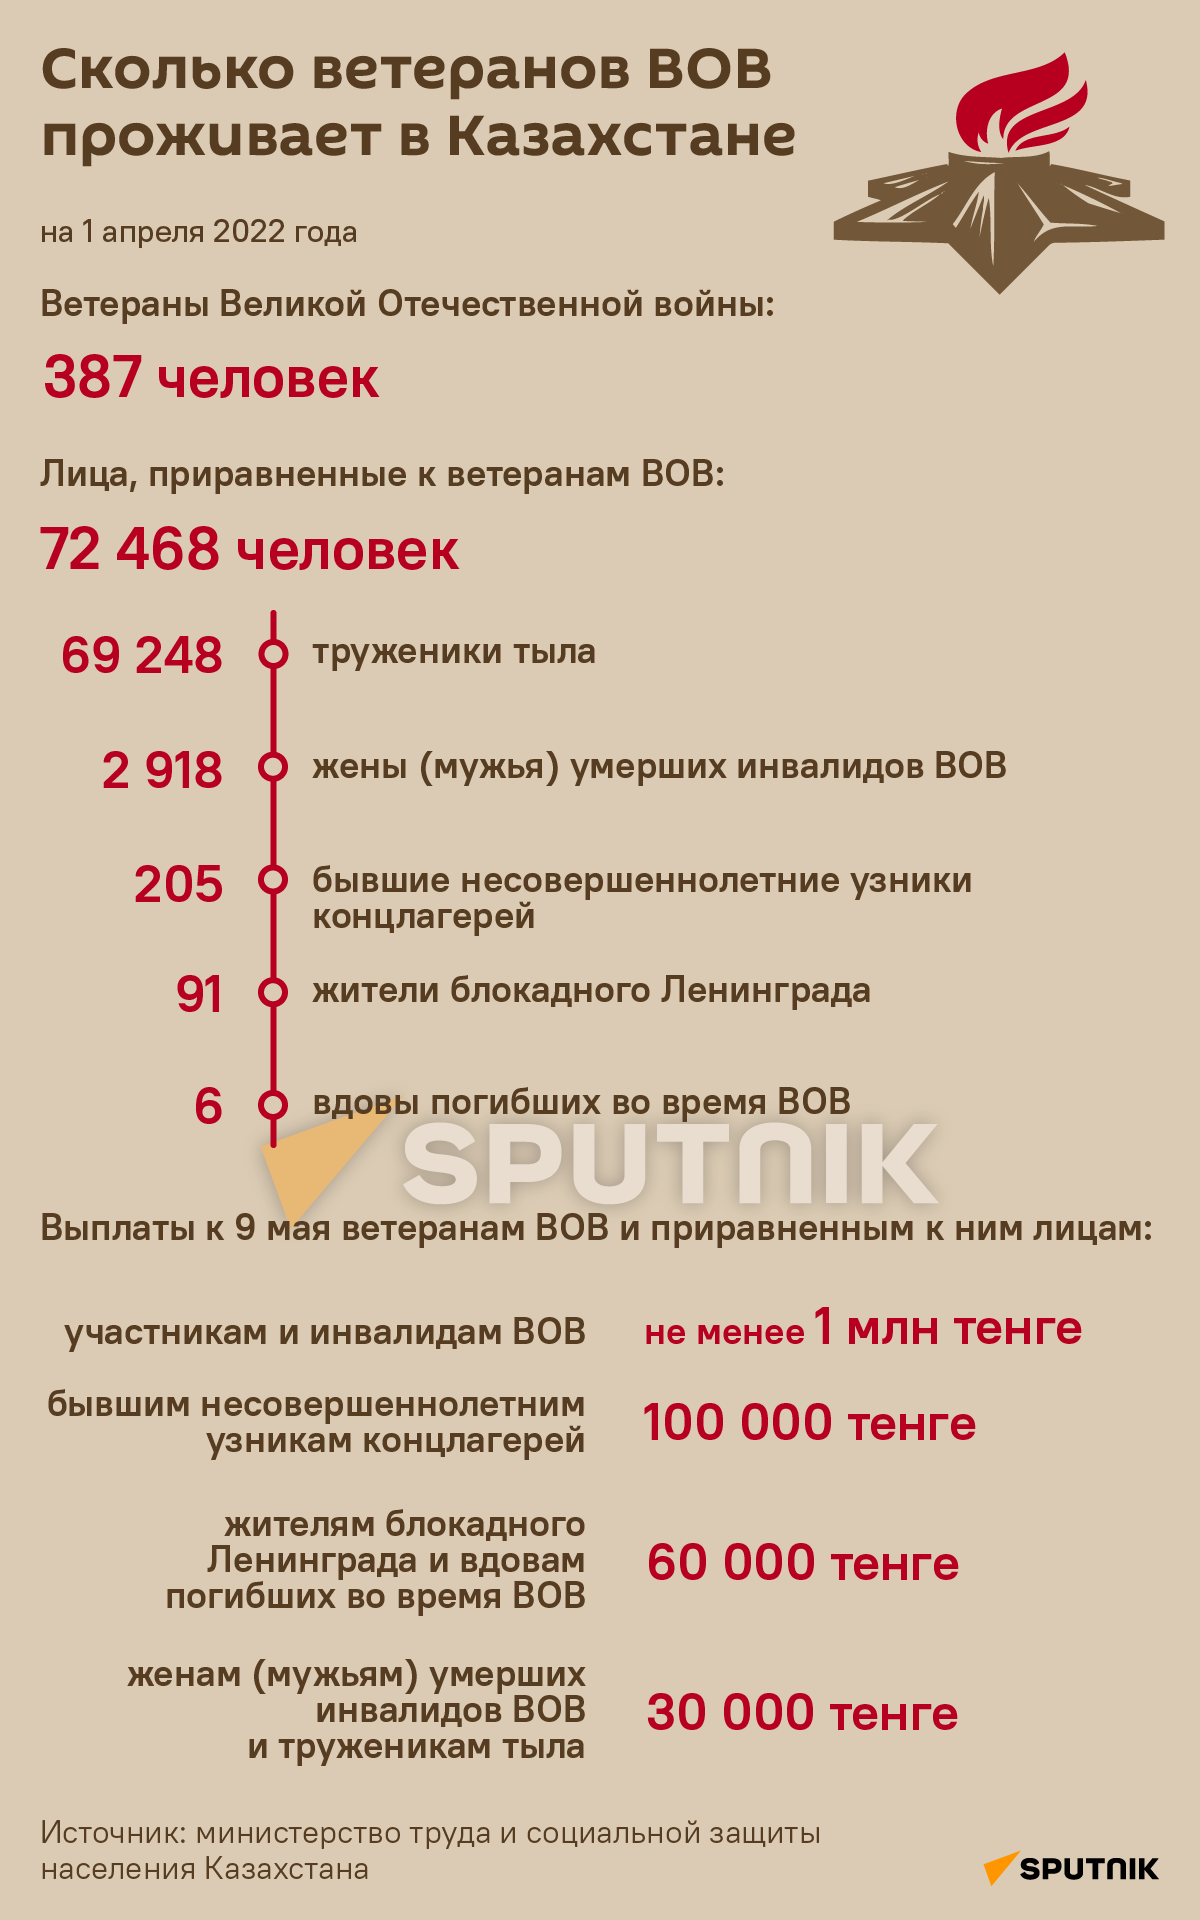 Сколько ветеранов живет в Казахстане - Sputnik Казахстан